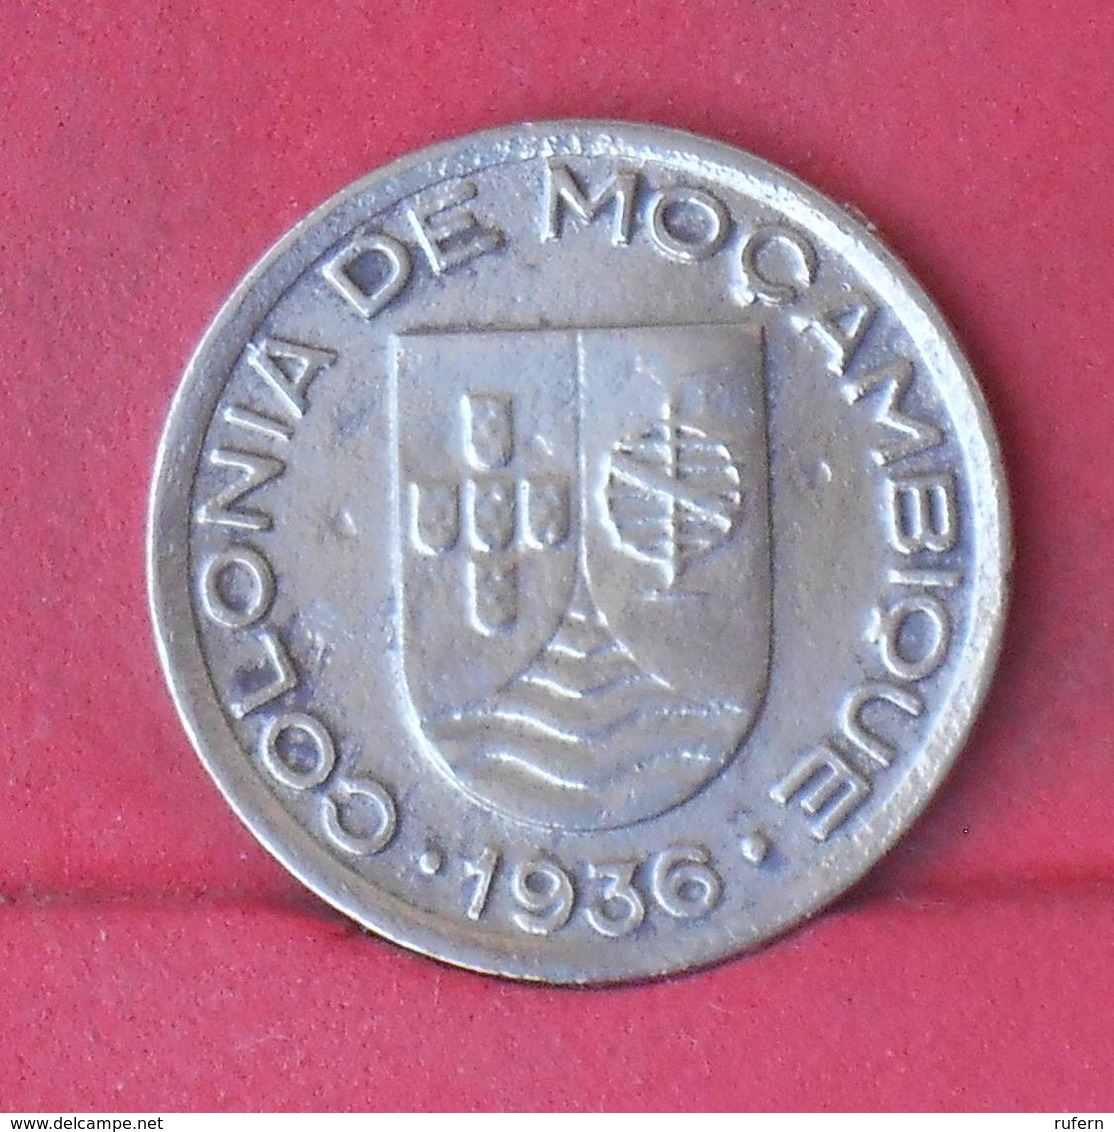 MOZAMBIQUE 50 CENTAVOS 1936 -    KM# 65 - (Nº29274) - Mozambique